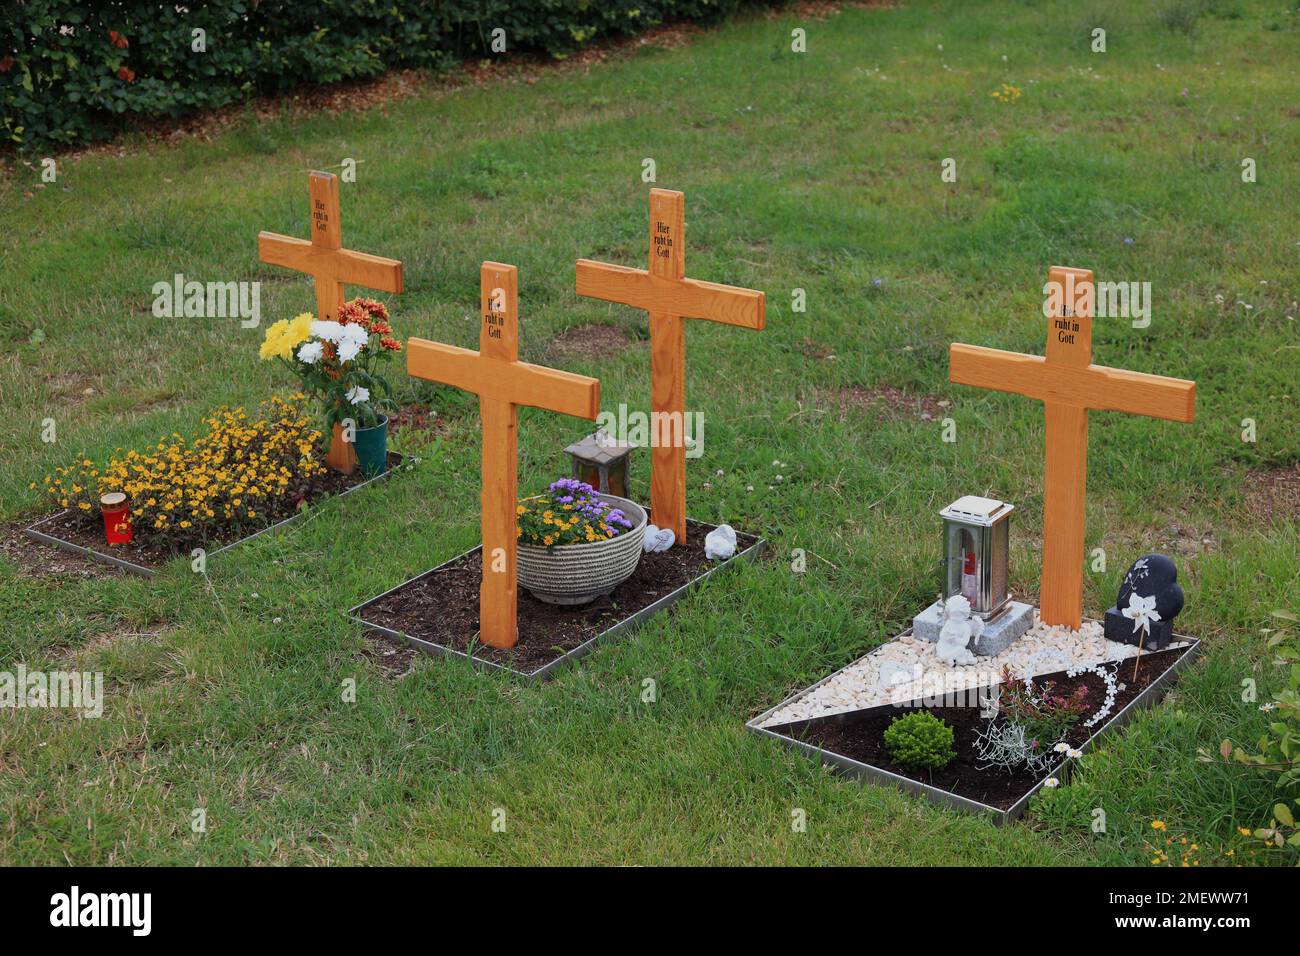 Blumengeschmückte anonyyme Urnengräber mit Holzkreuz mit Aufschrift Hier ruht in Gott, auf einer Wiese im Friedhof / Flower decorated anonyme urn g Banque D'Images